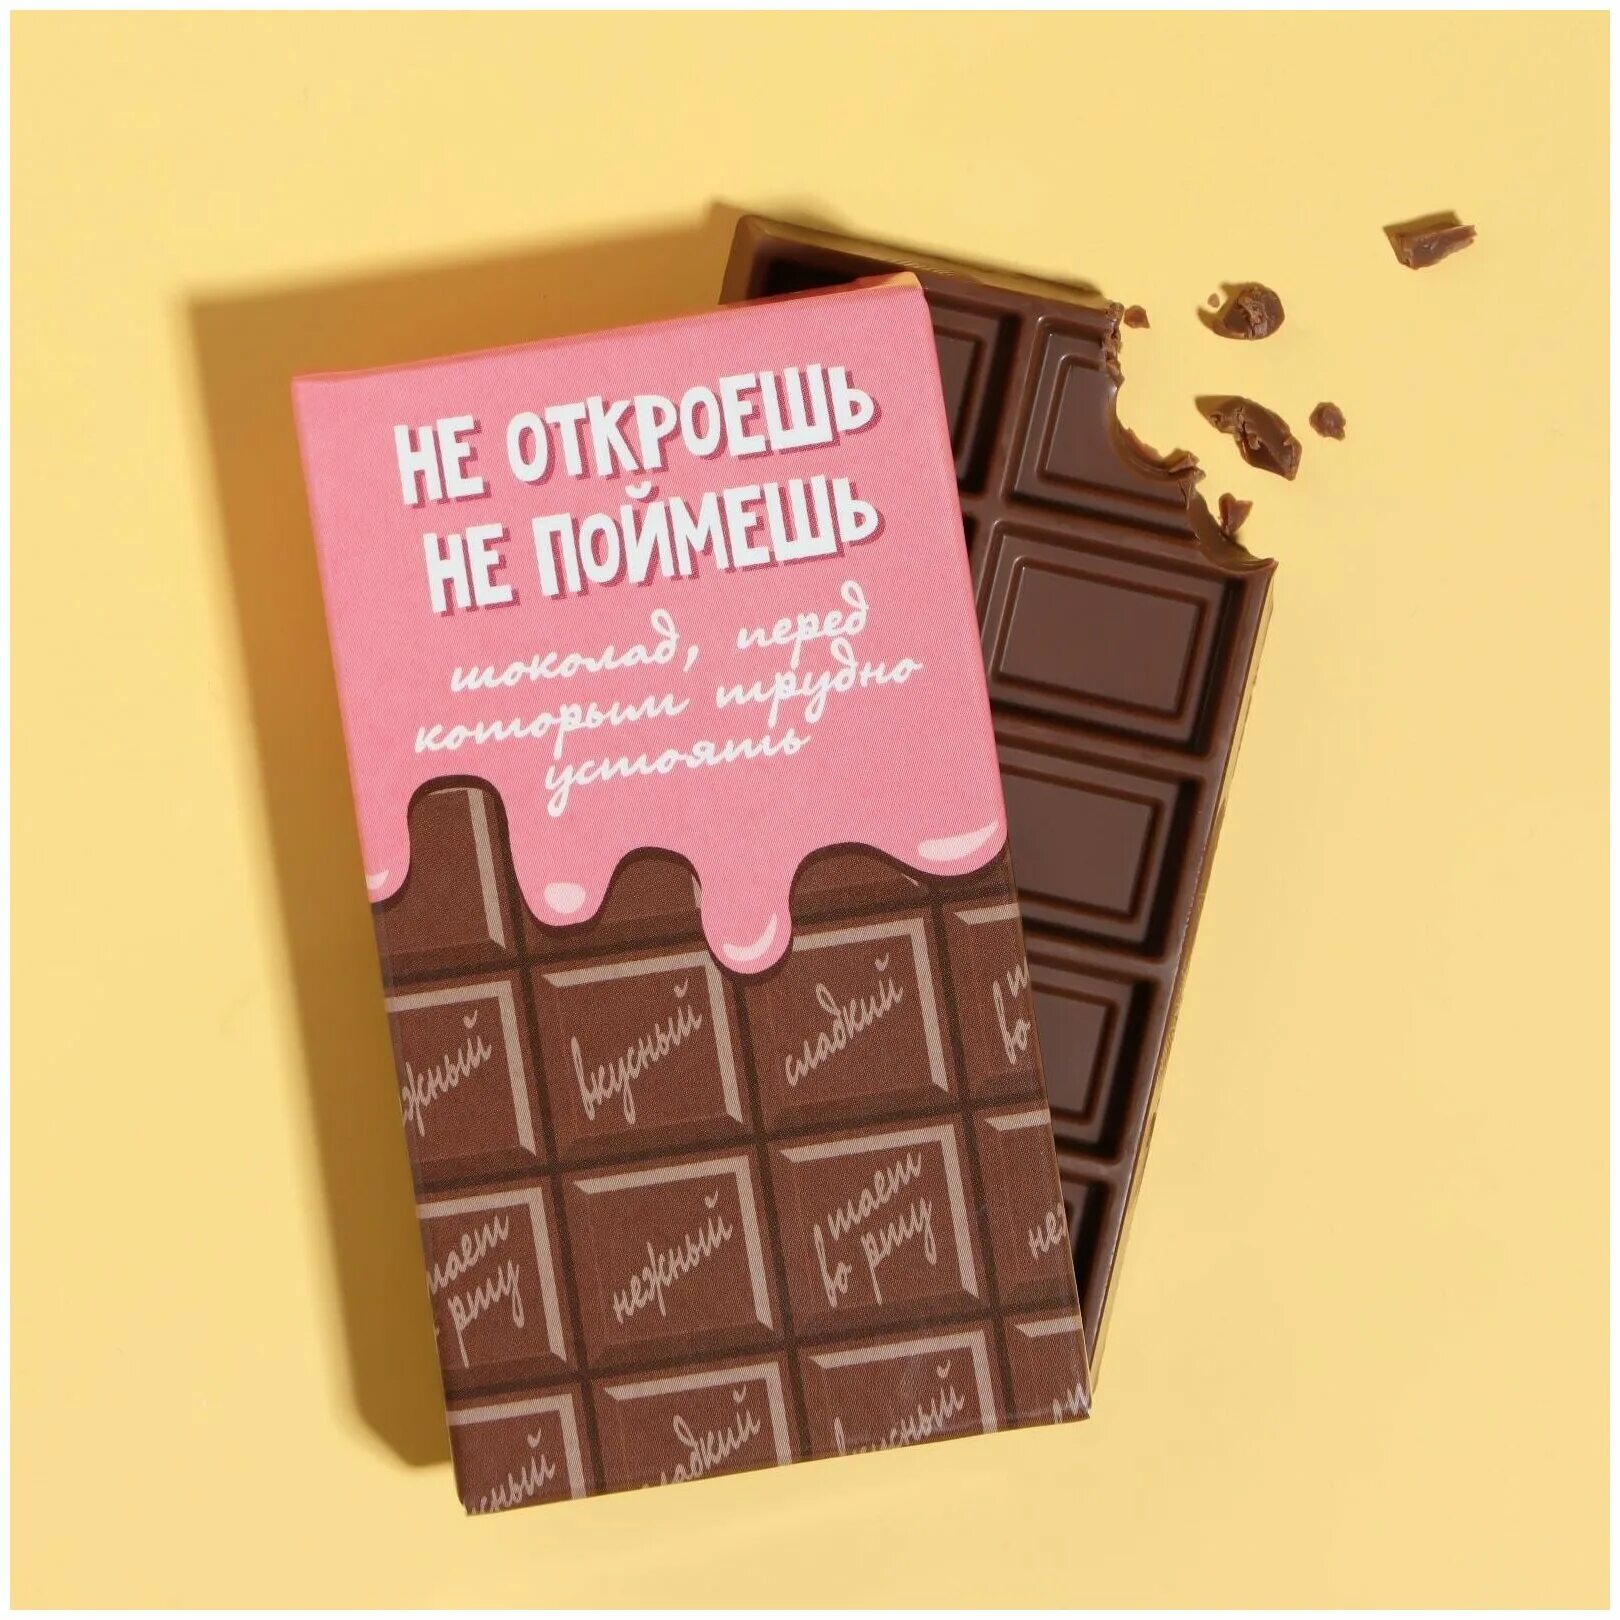 Прикольные шоколадки. Бельгийский молочный шоколад. Первая плитка шоколада. Необычные надписи на упаковке. Сказать шоколадка